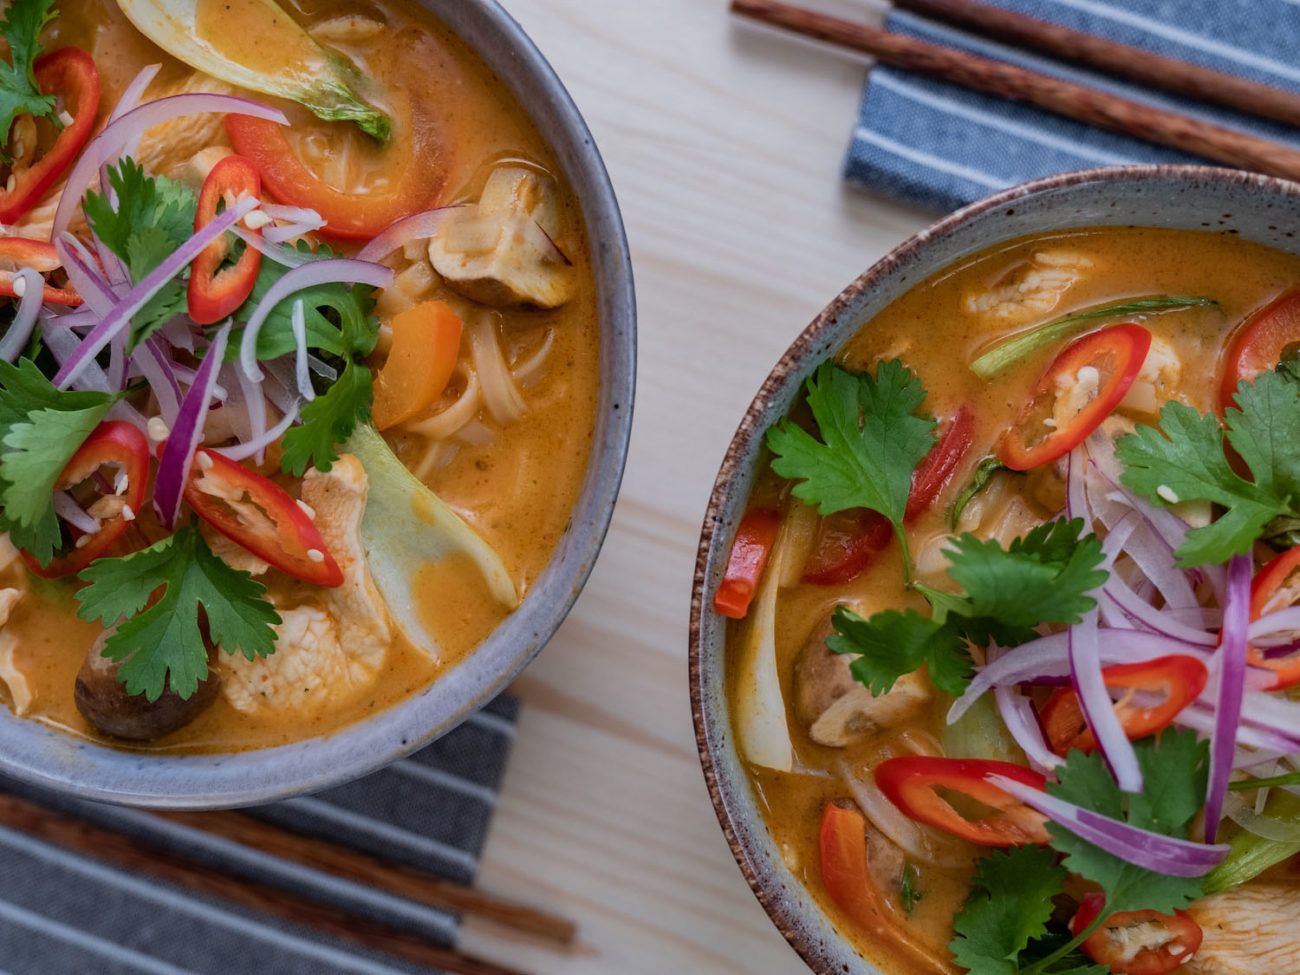 Scharfe Rote-Curry-Suppe mit Hähnchen und Reisnudeln, Stäbchen, Servietten